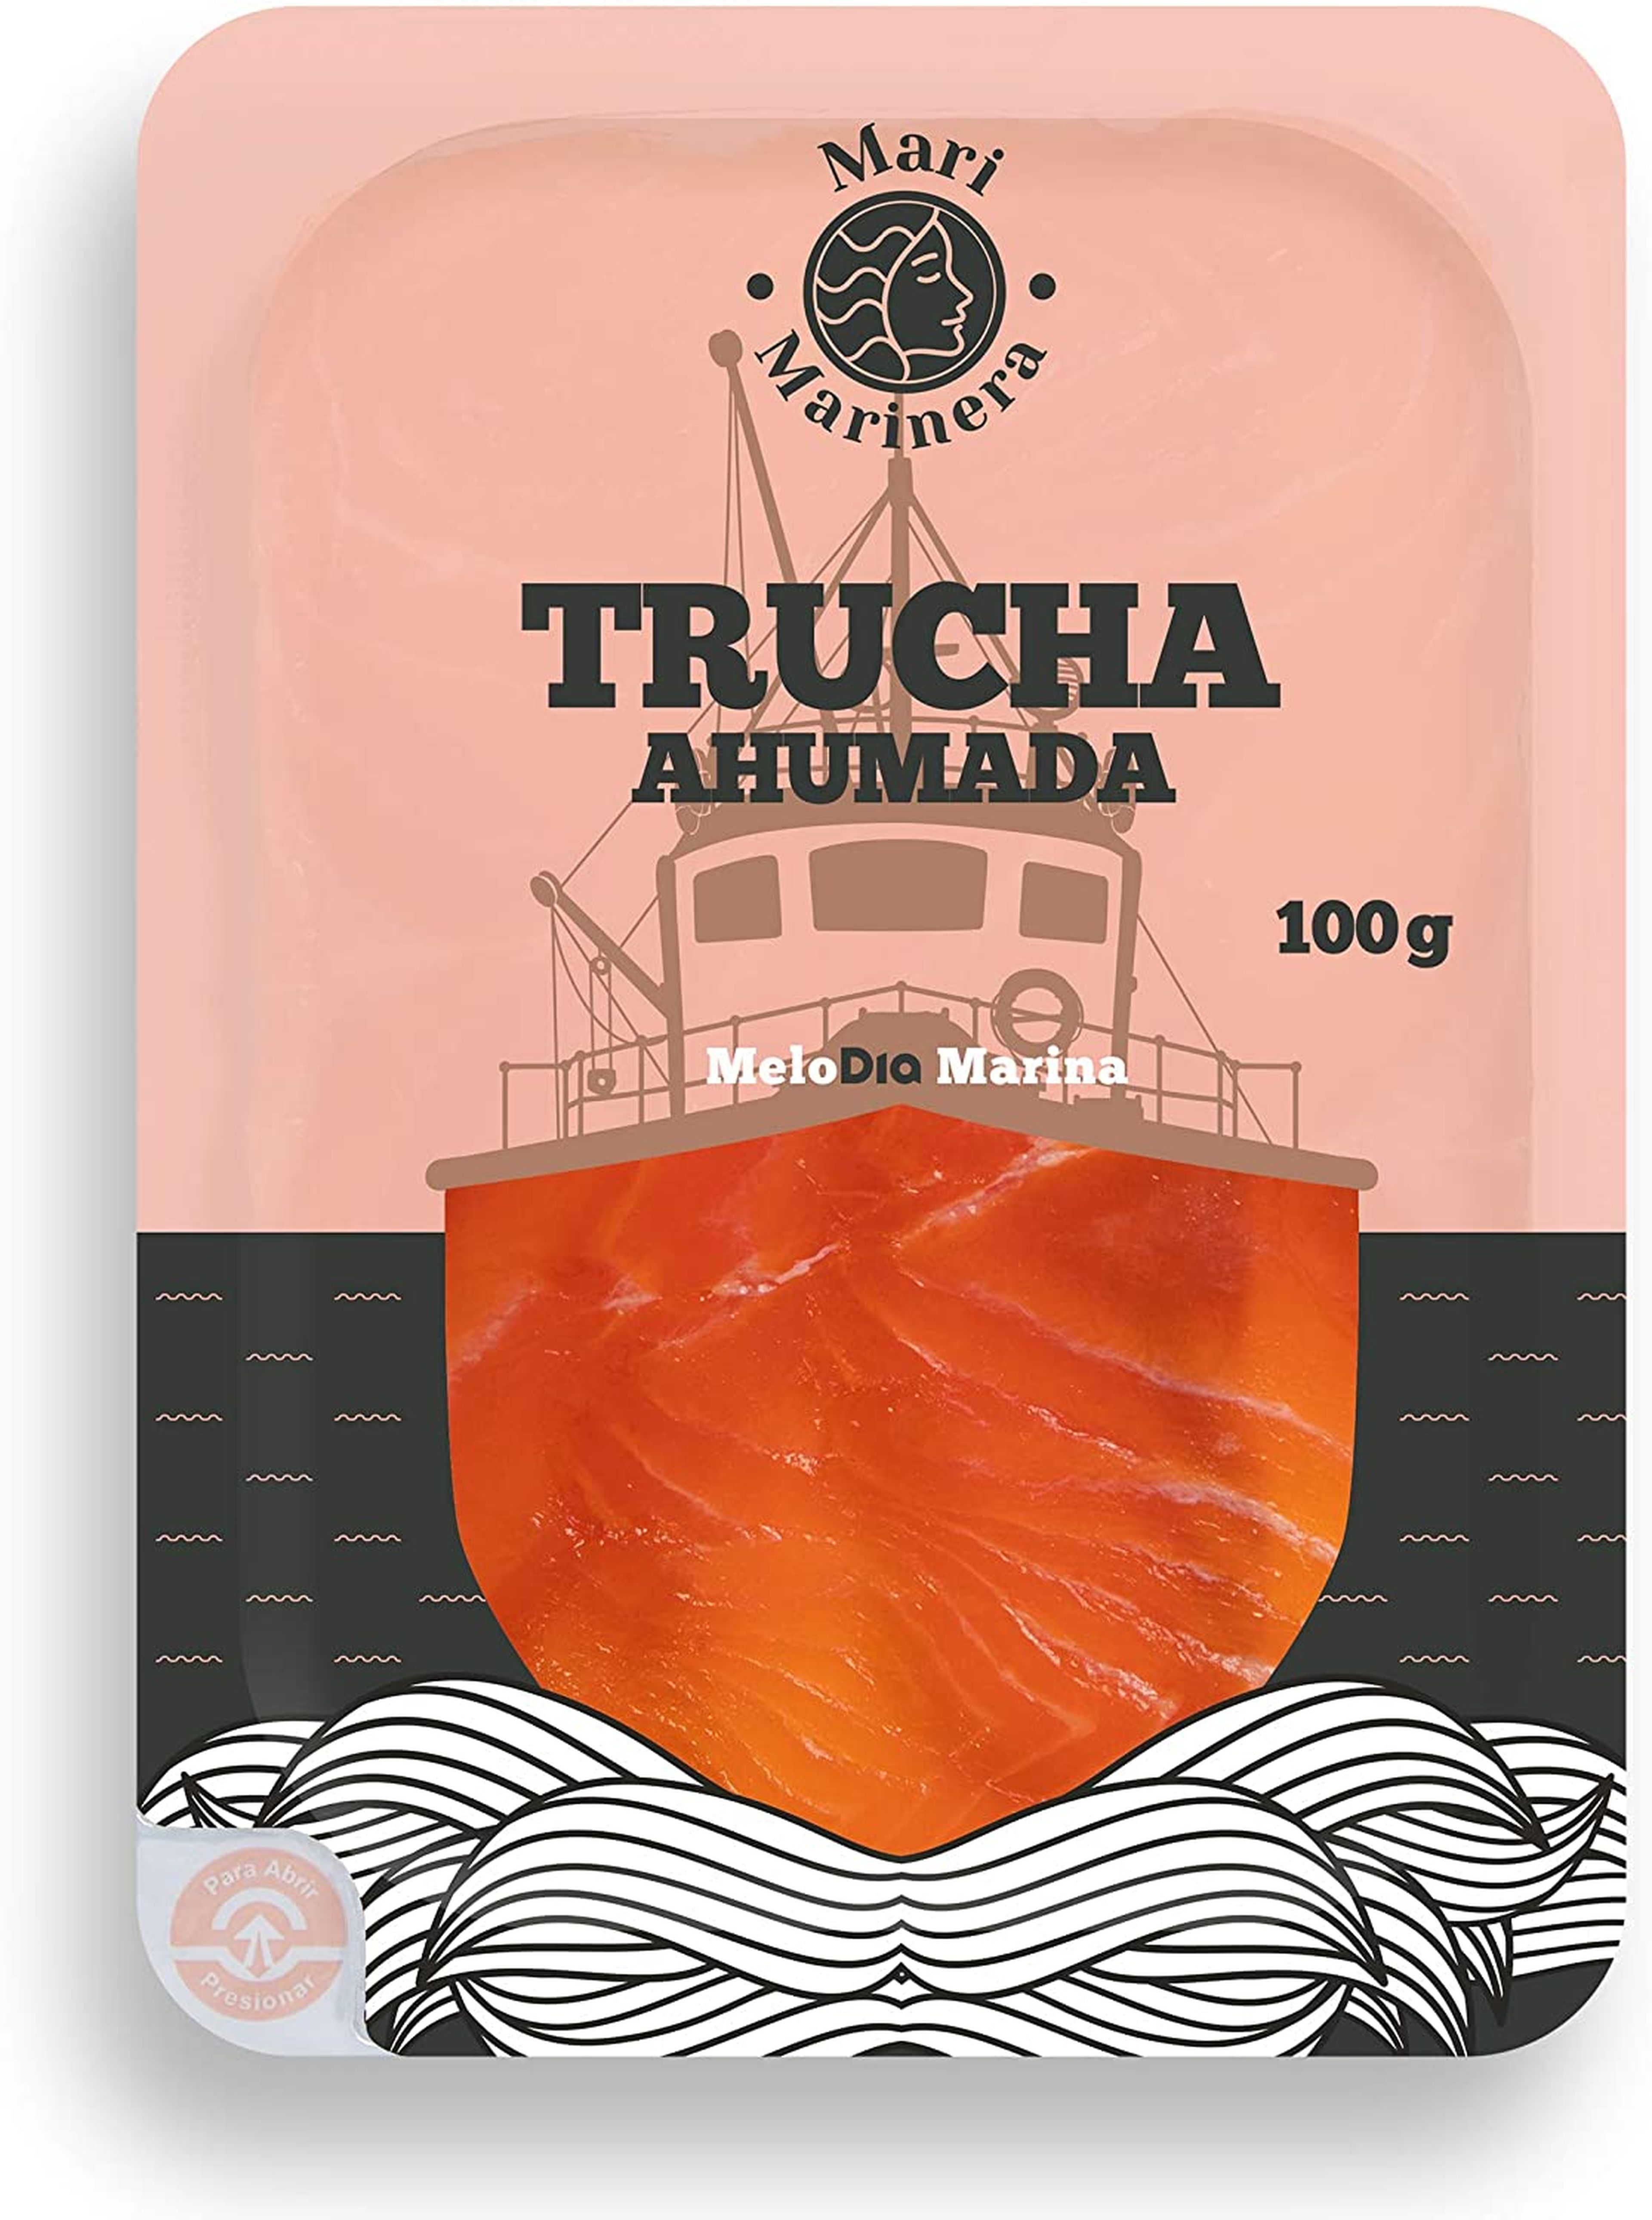 Trucha ahumada